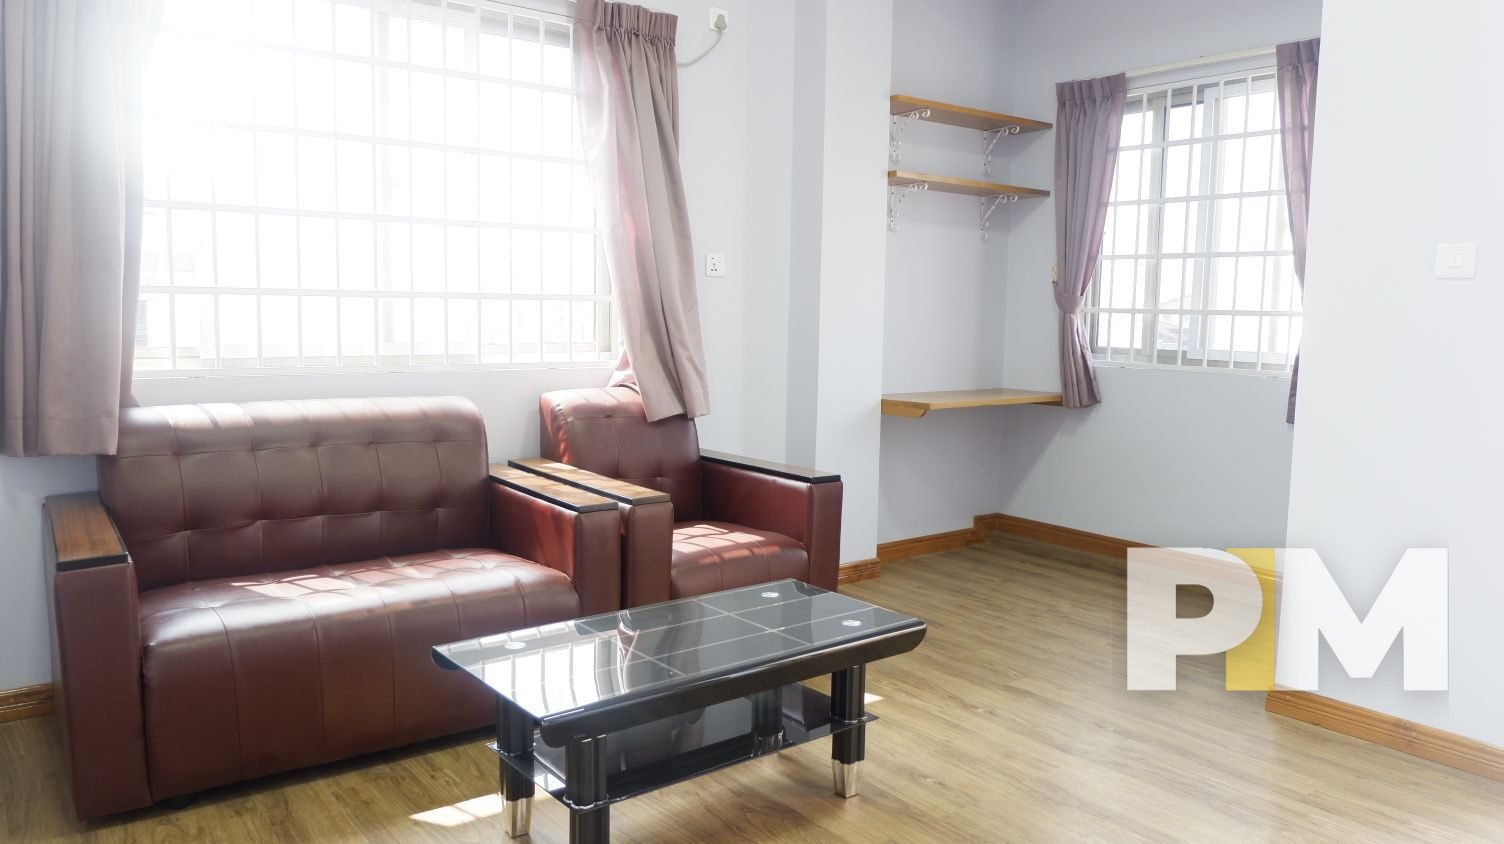 sofa set and coffee table - yangon real estate